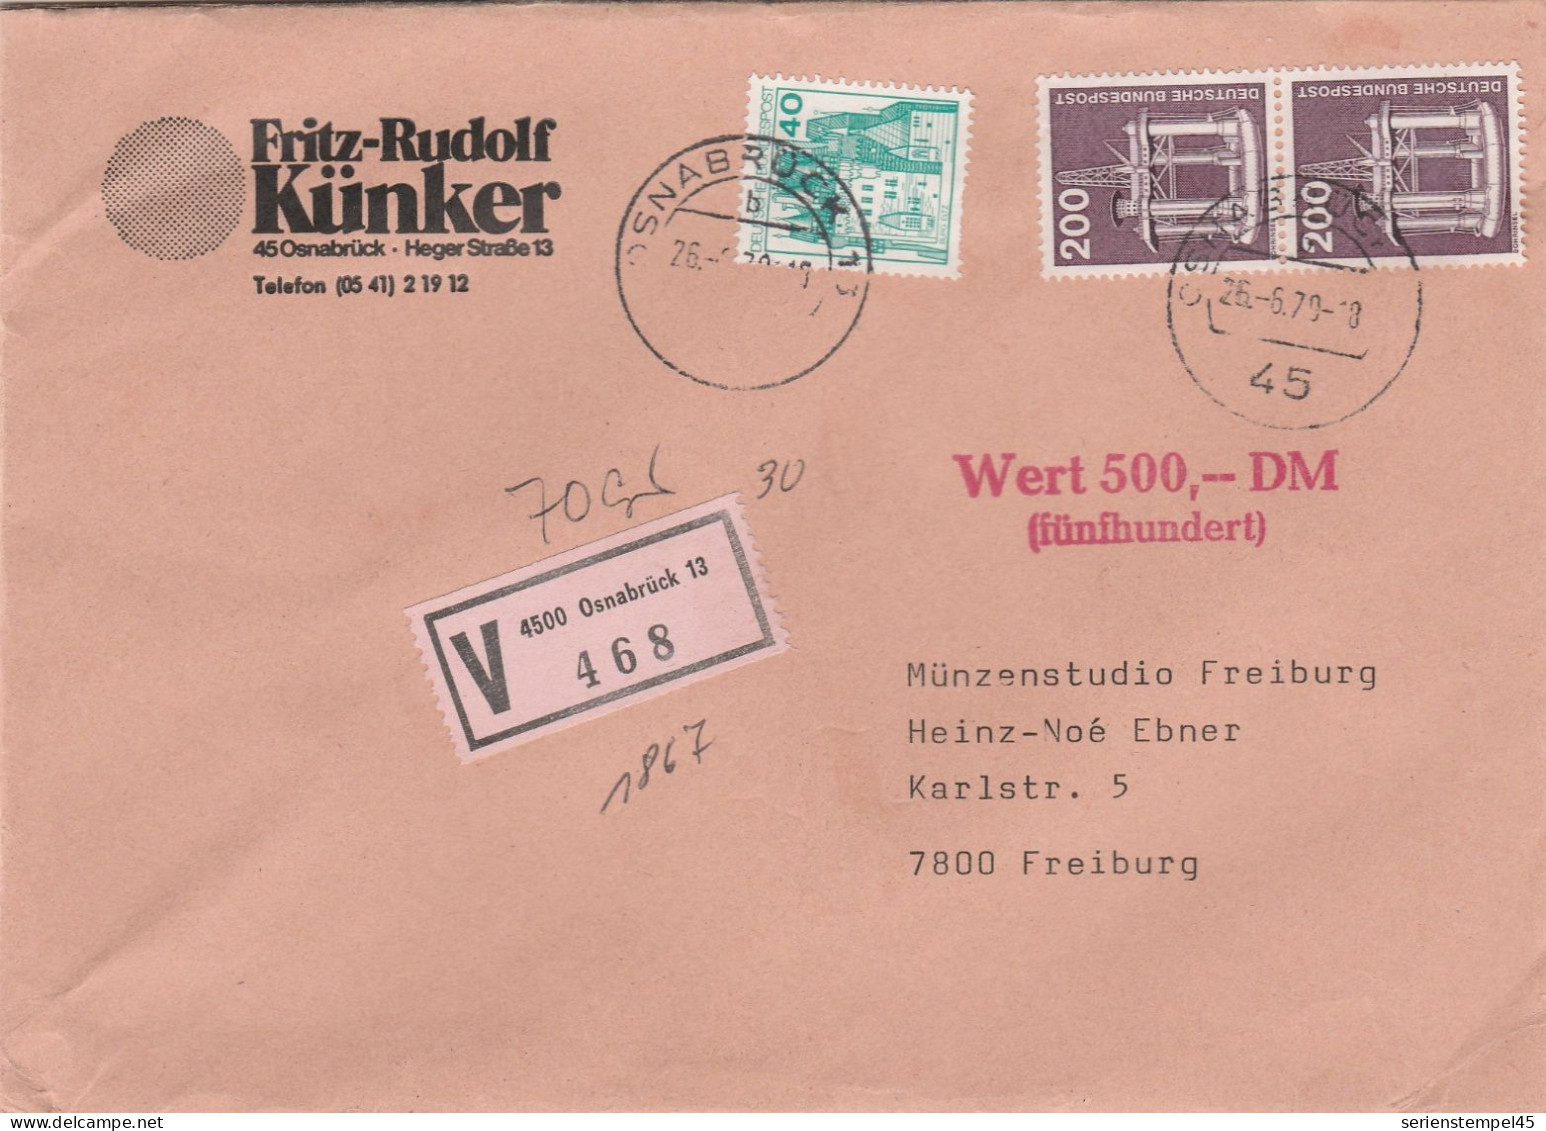 Bund Wertbrief 500 DM Mit V Zettel 4500 Osnabrück 13 Porto 4,40 DM 1979 - R- & V- Labels